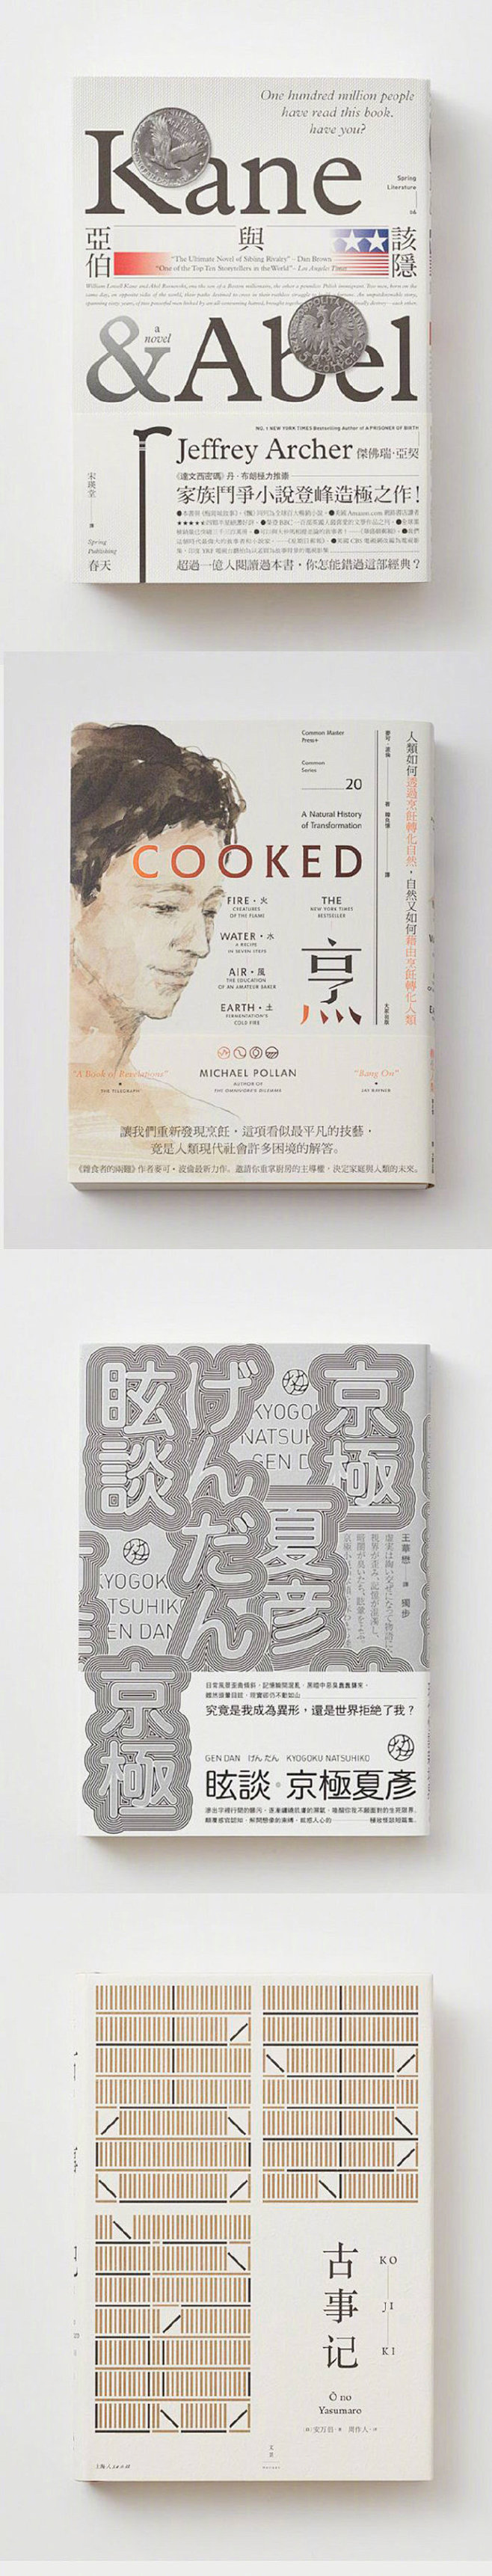 平面设计师王志弘的书籍设计作品集

#大...